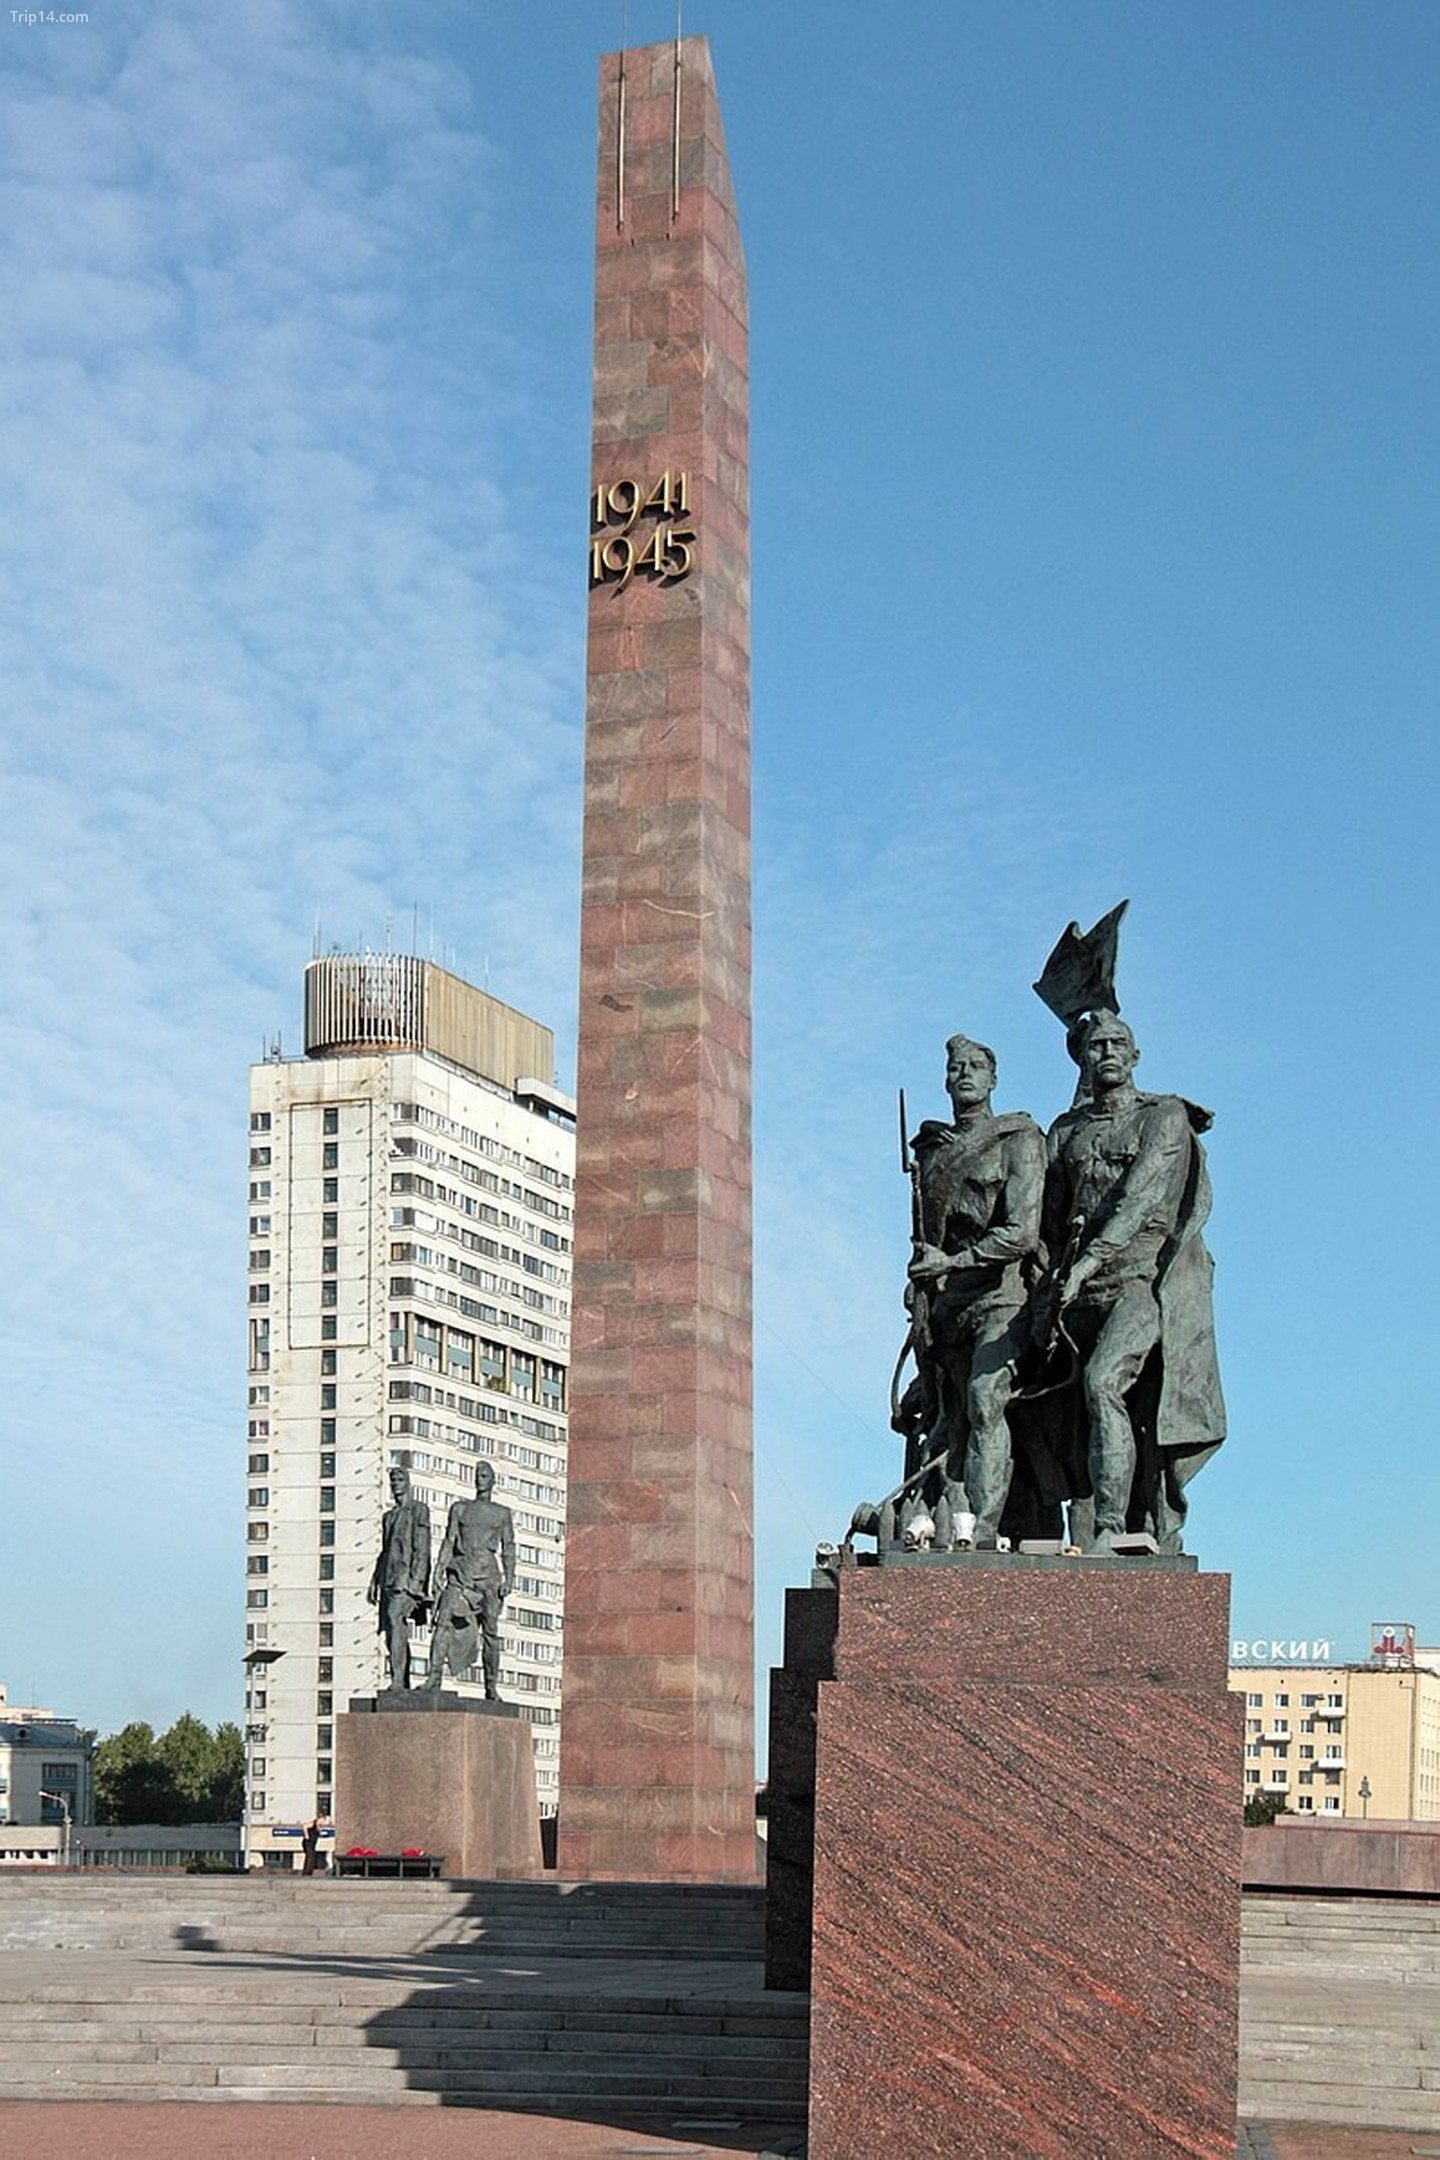  Đài tưởng niệm những người bảo vệ anh hùng của Leningrad   |   